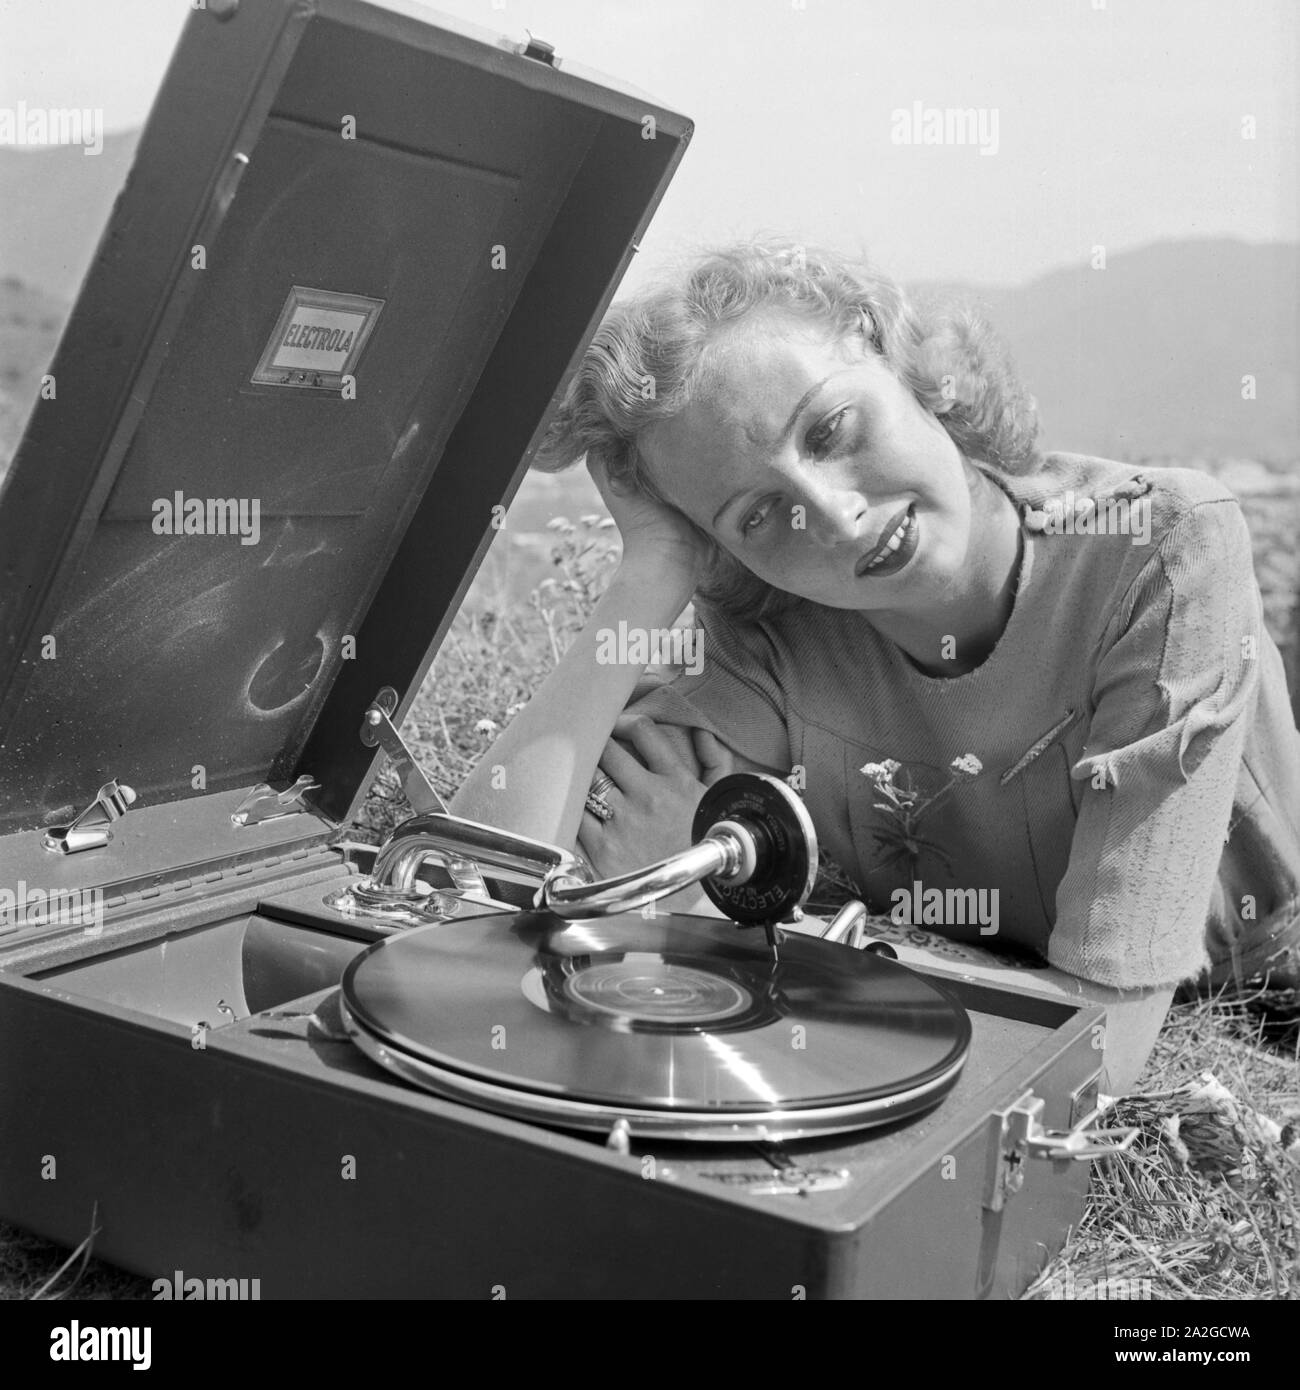 Eine junge Frau mit dem Electrola Koffer Grammofon und hört das Stück 'Frühlingstag' von Barnaba von Geczy, Österreich 1930er Jahre. Una giovane donna con un grammofono Electrola e un Electrola shellac record, Austria 1930s. Foto Stock